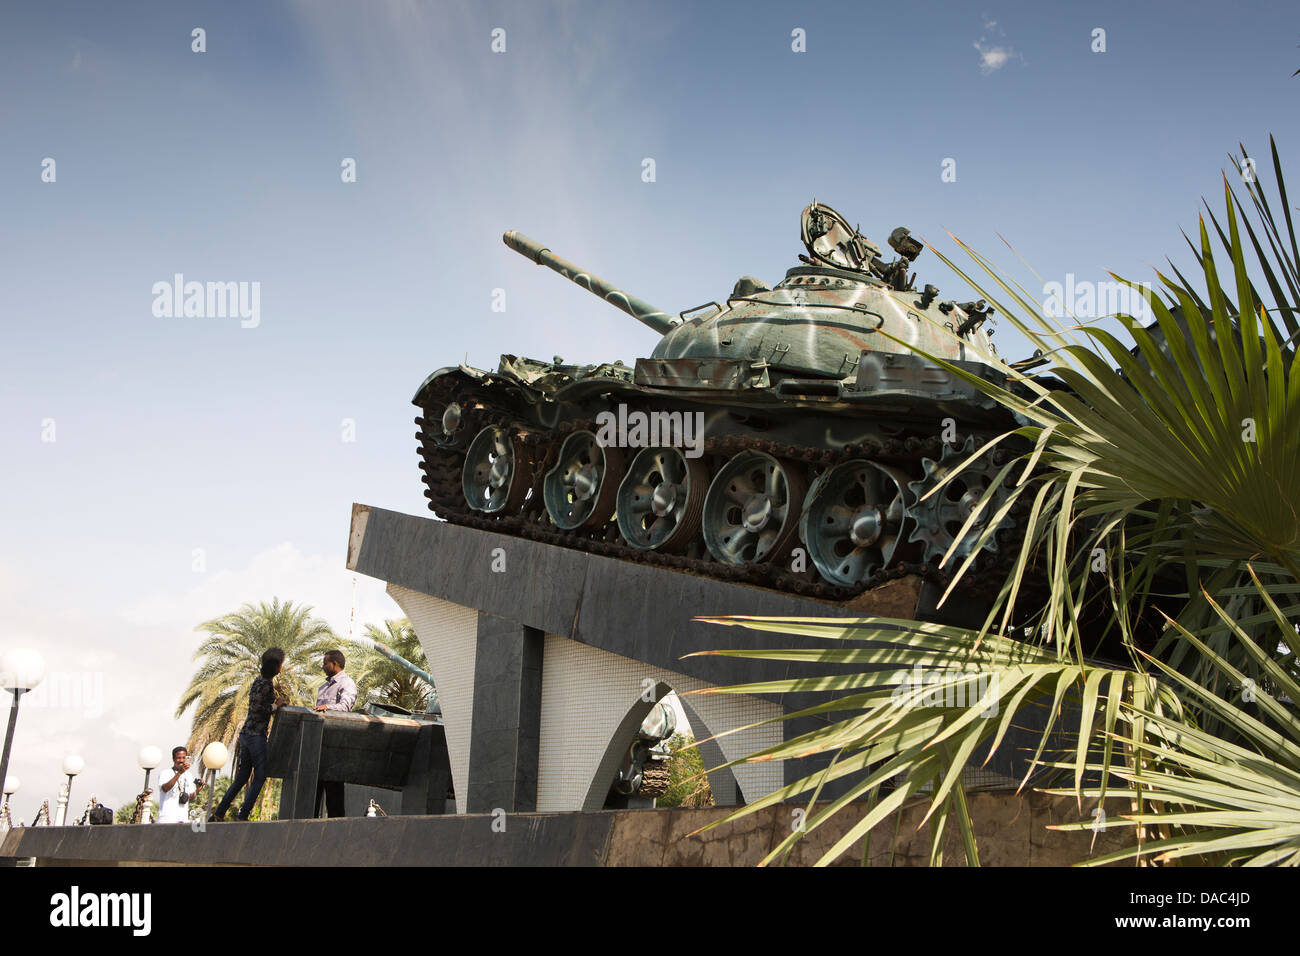 Afrika, Eritrea, Massawa, Tualud, Krieg Speicher Platz, äthiopische tank bilden Denkmal 1990 Krieg Stockfoto